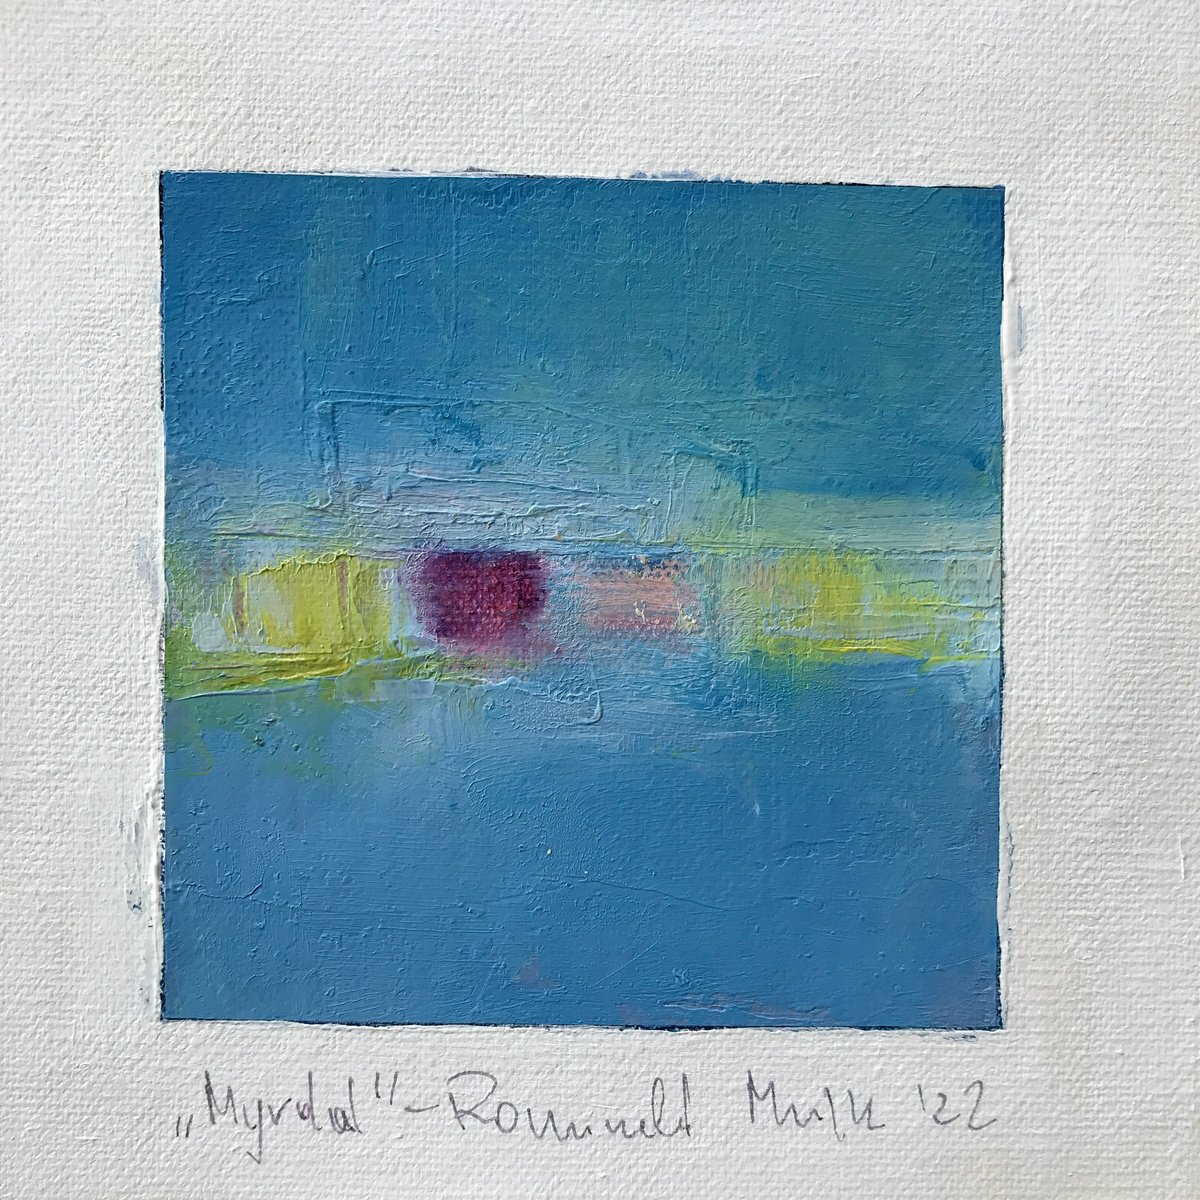 Myrdal by Romuald Mulk Musiolik